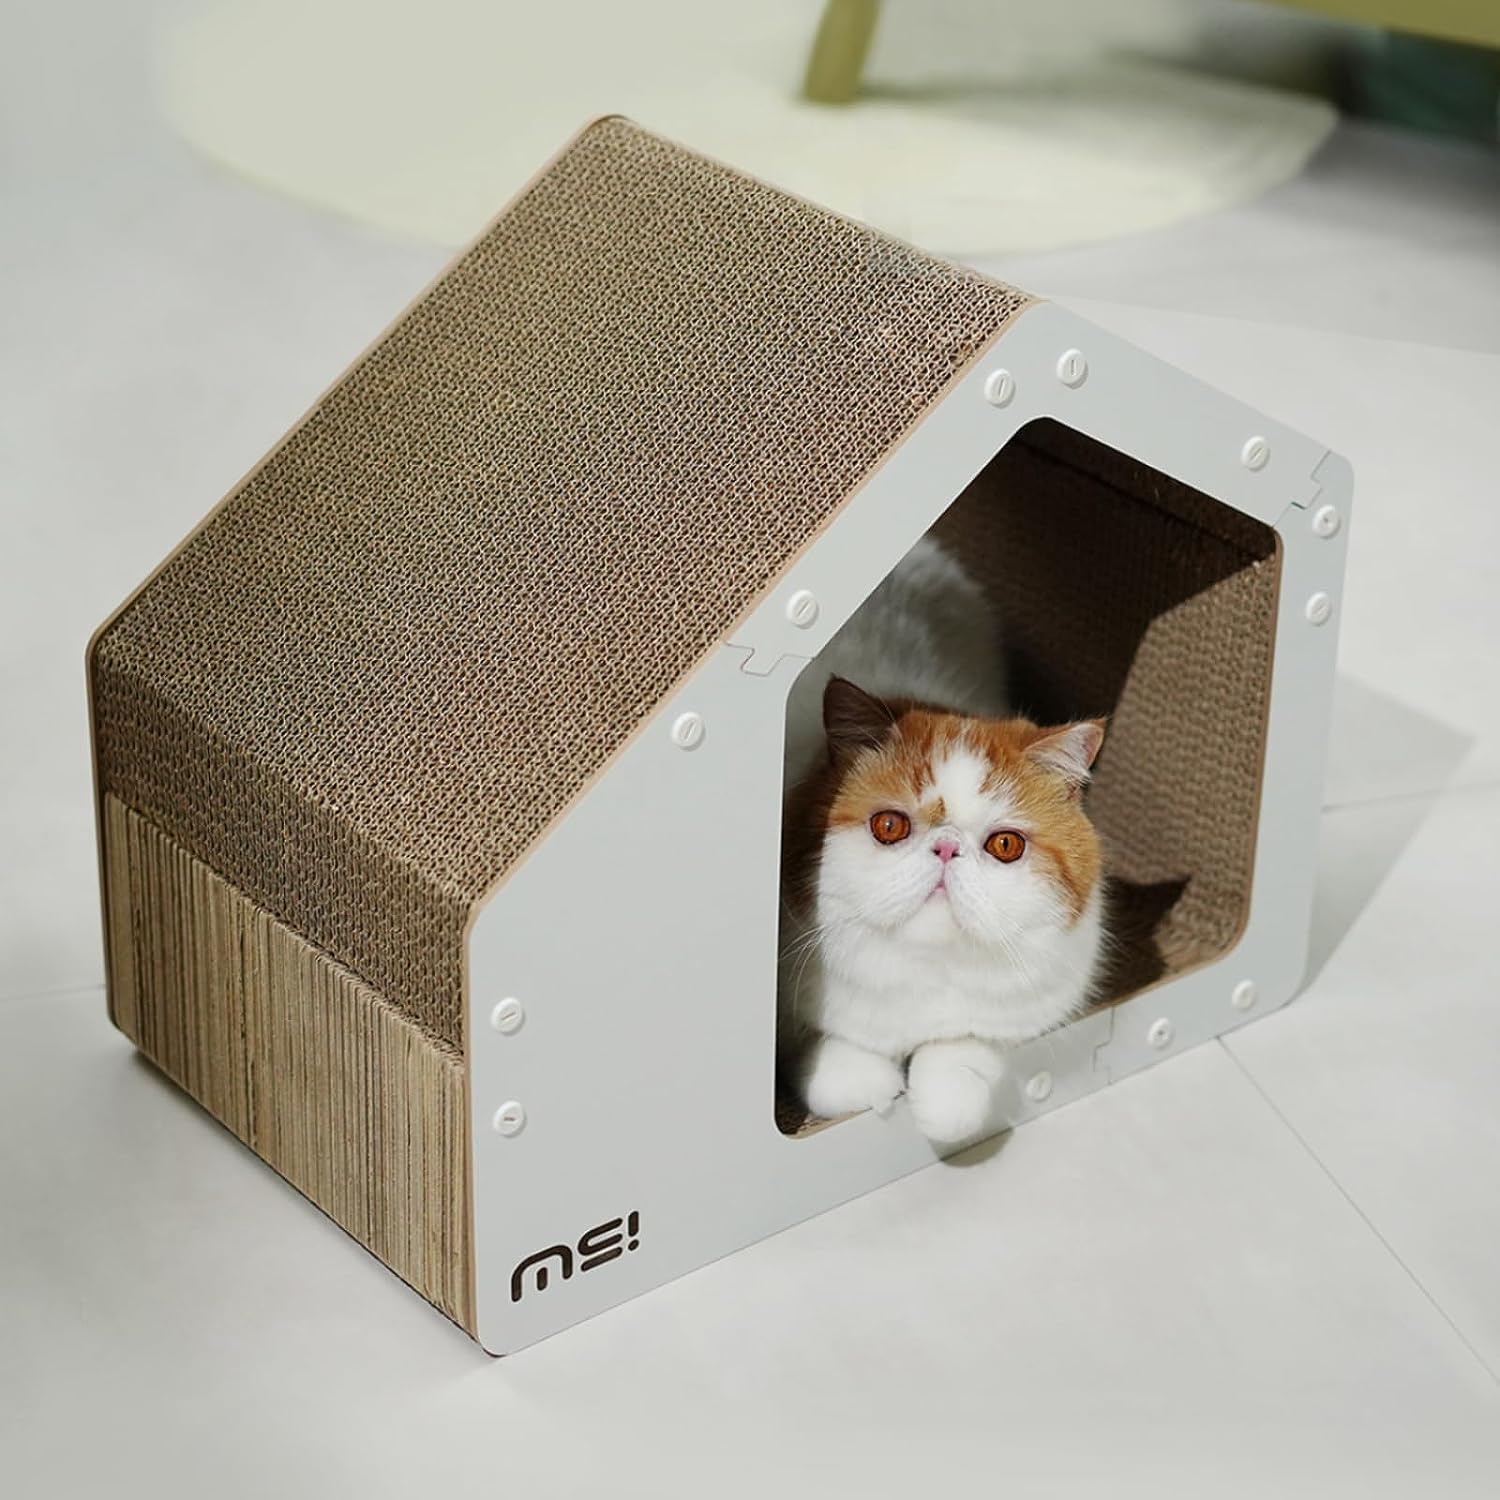 Ms! Make cat scratcher cardboard house 